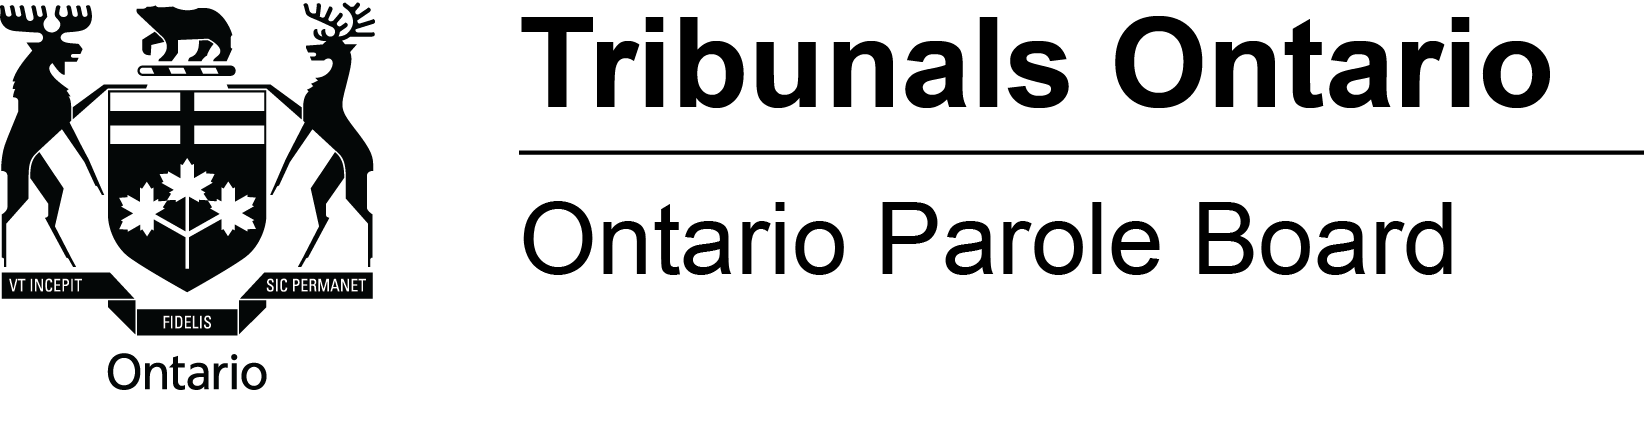 Ontario Parole Board logo